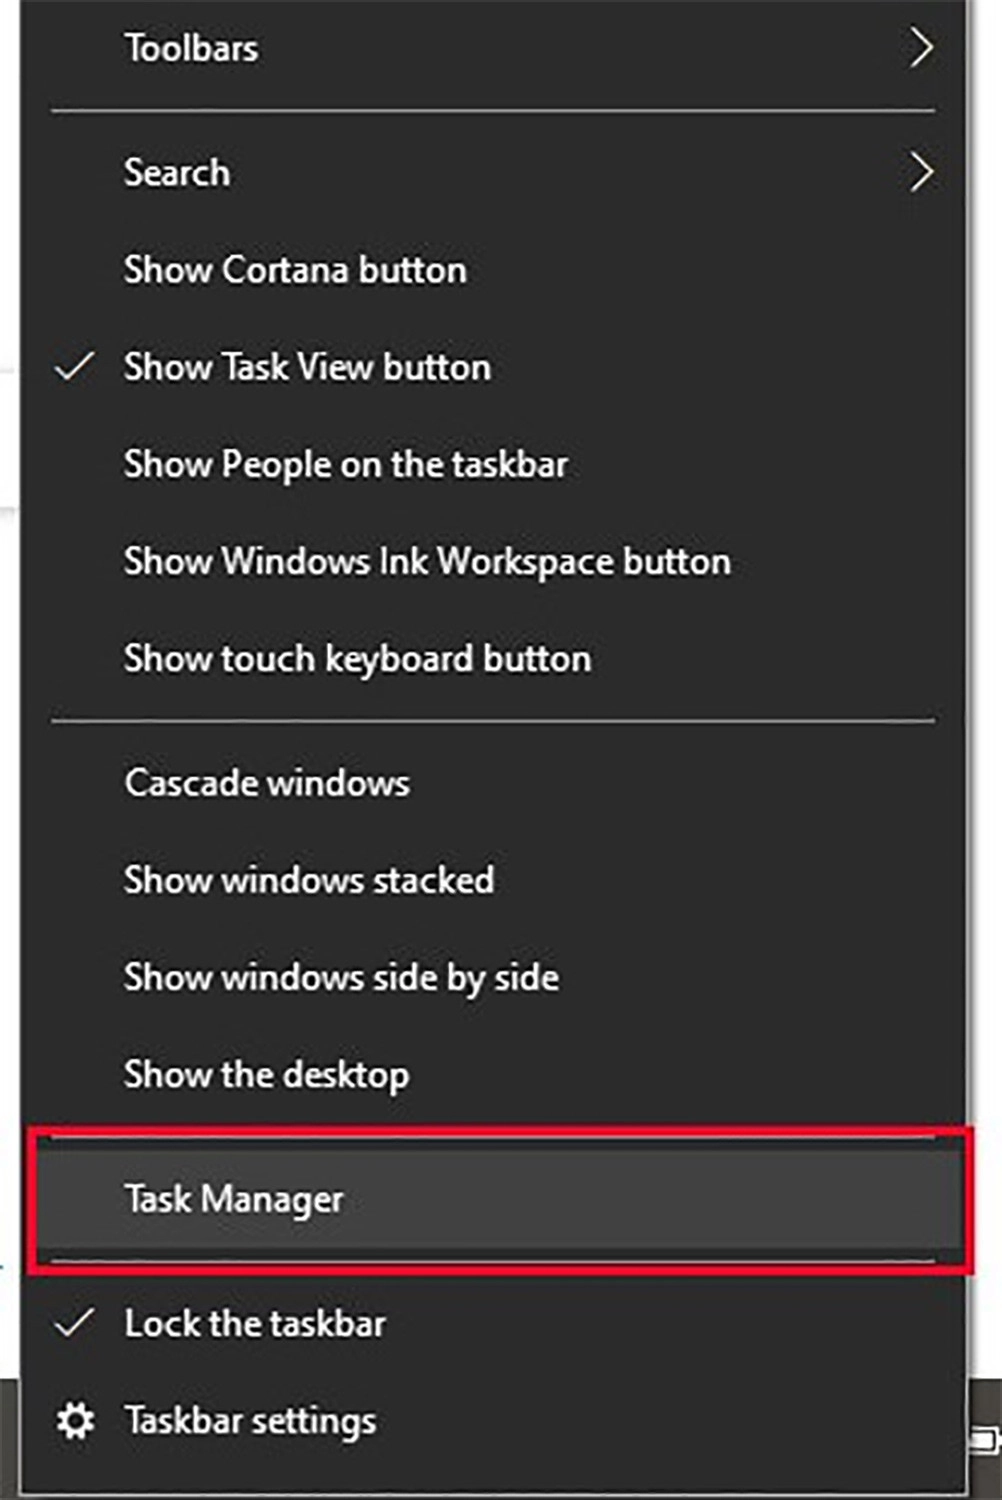 Bạn nhấn chuột phải vào Taskbar để chọn Task Manager